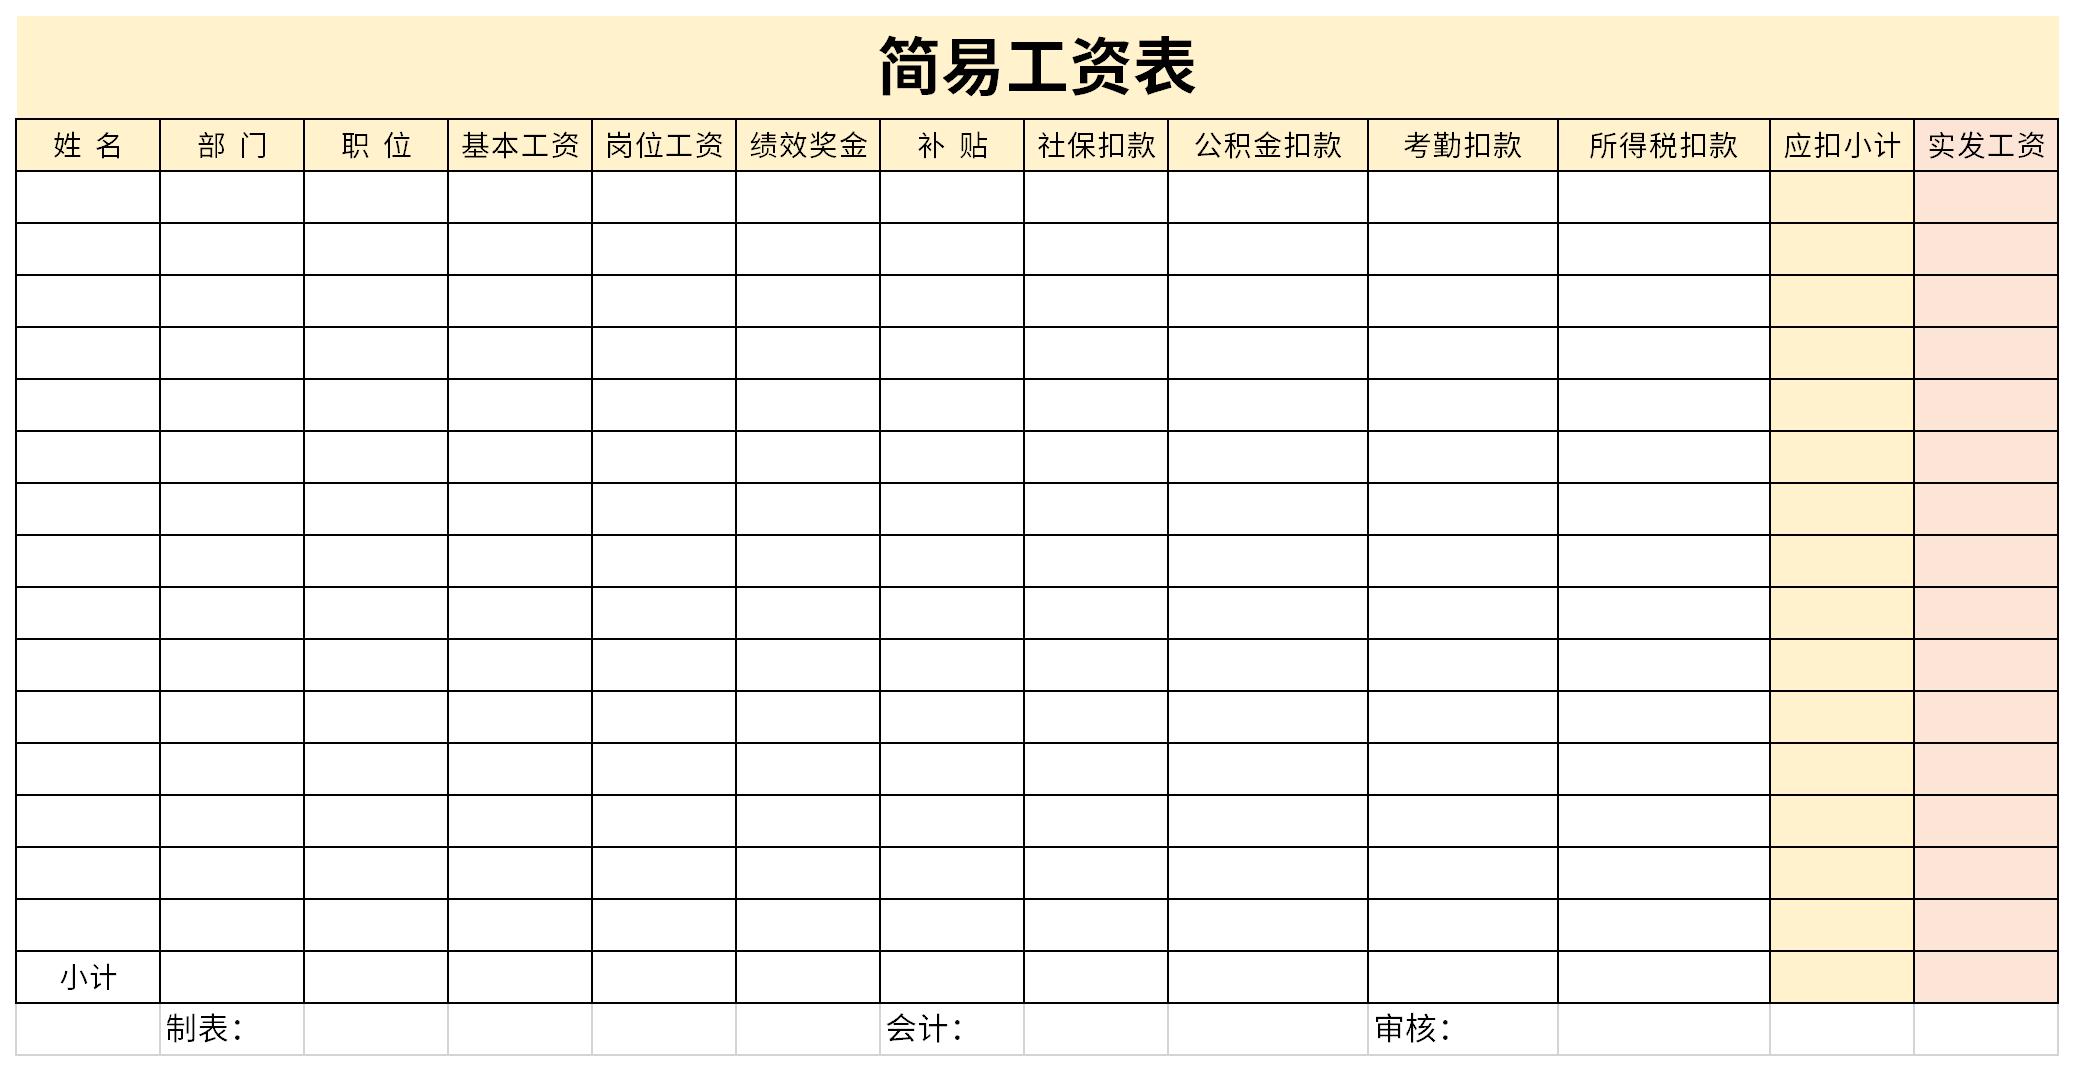 黄蓝色读书计划表简洁学校交流中文课程计划表 - 模板 - Canva可画